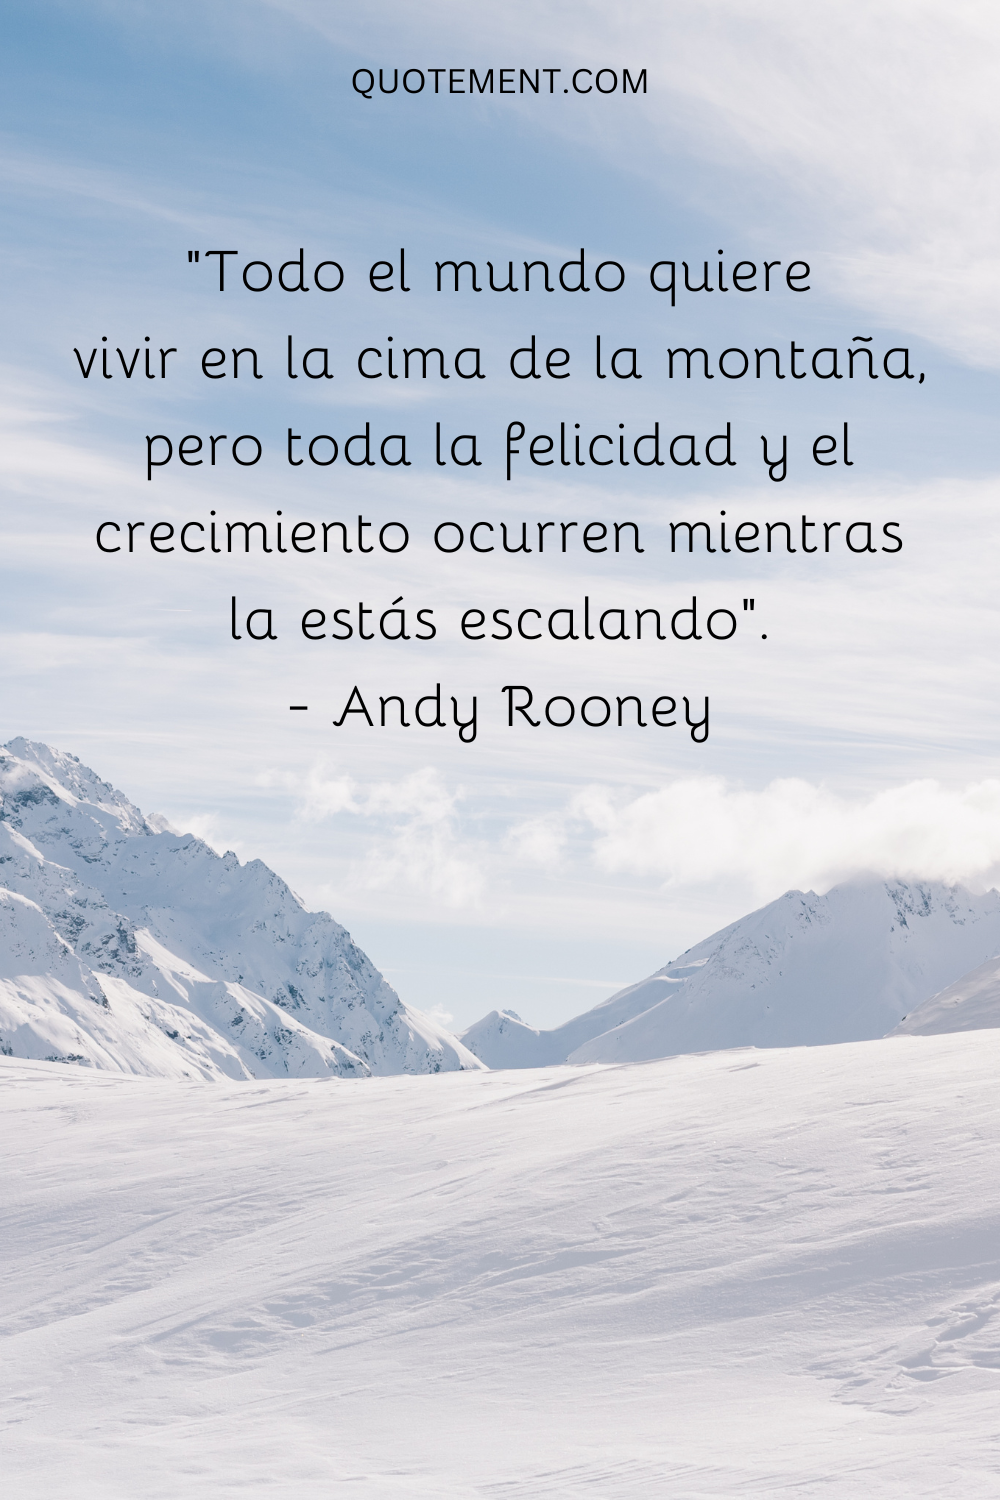 "Todo el mundo quiere vivir en la cima de la montaña, pero toda la felicidad y el crecimiento se producen mientras la estás escalando". - Andy Rooney